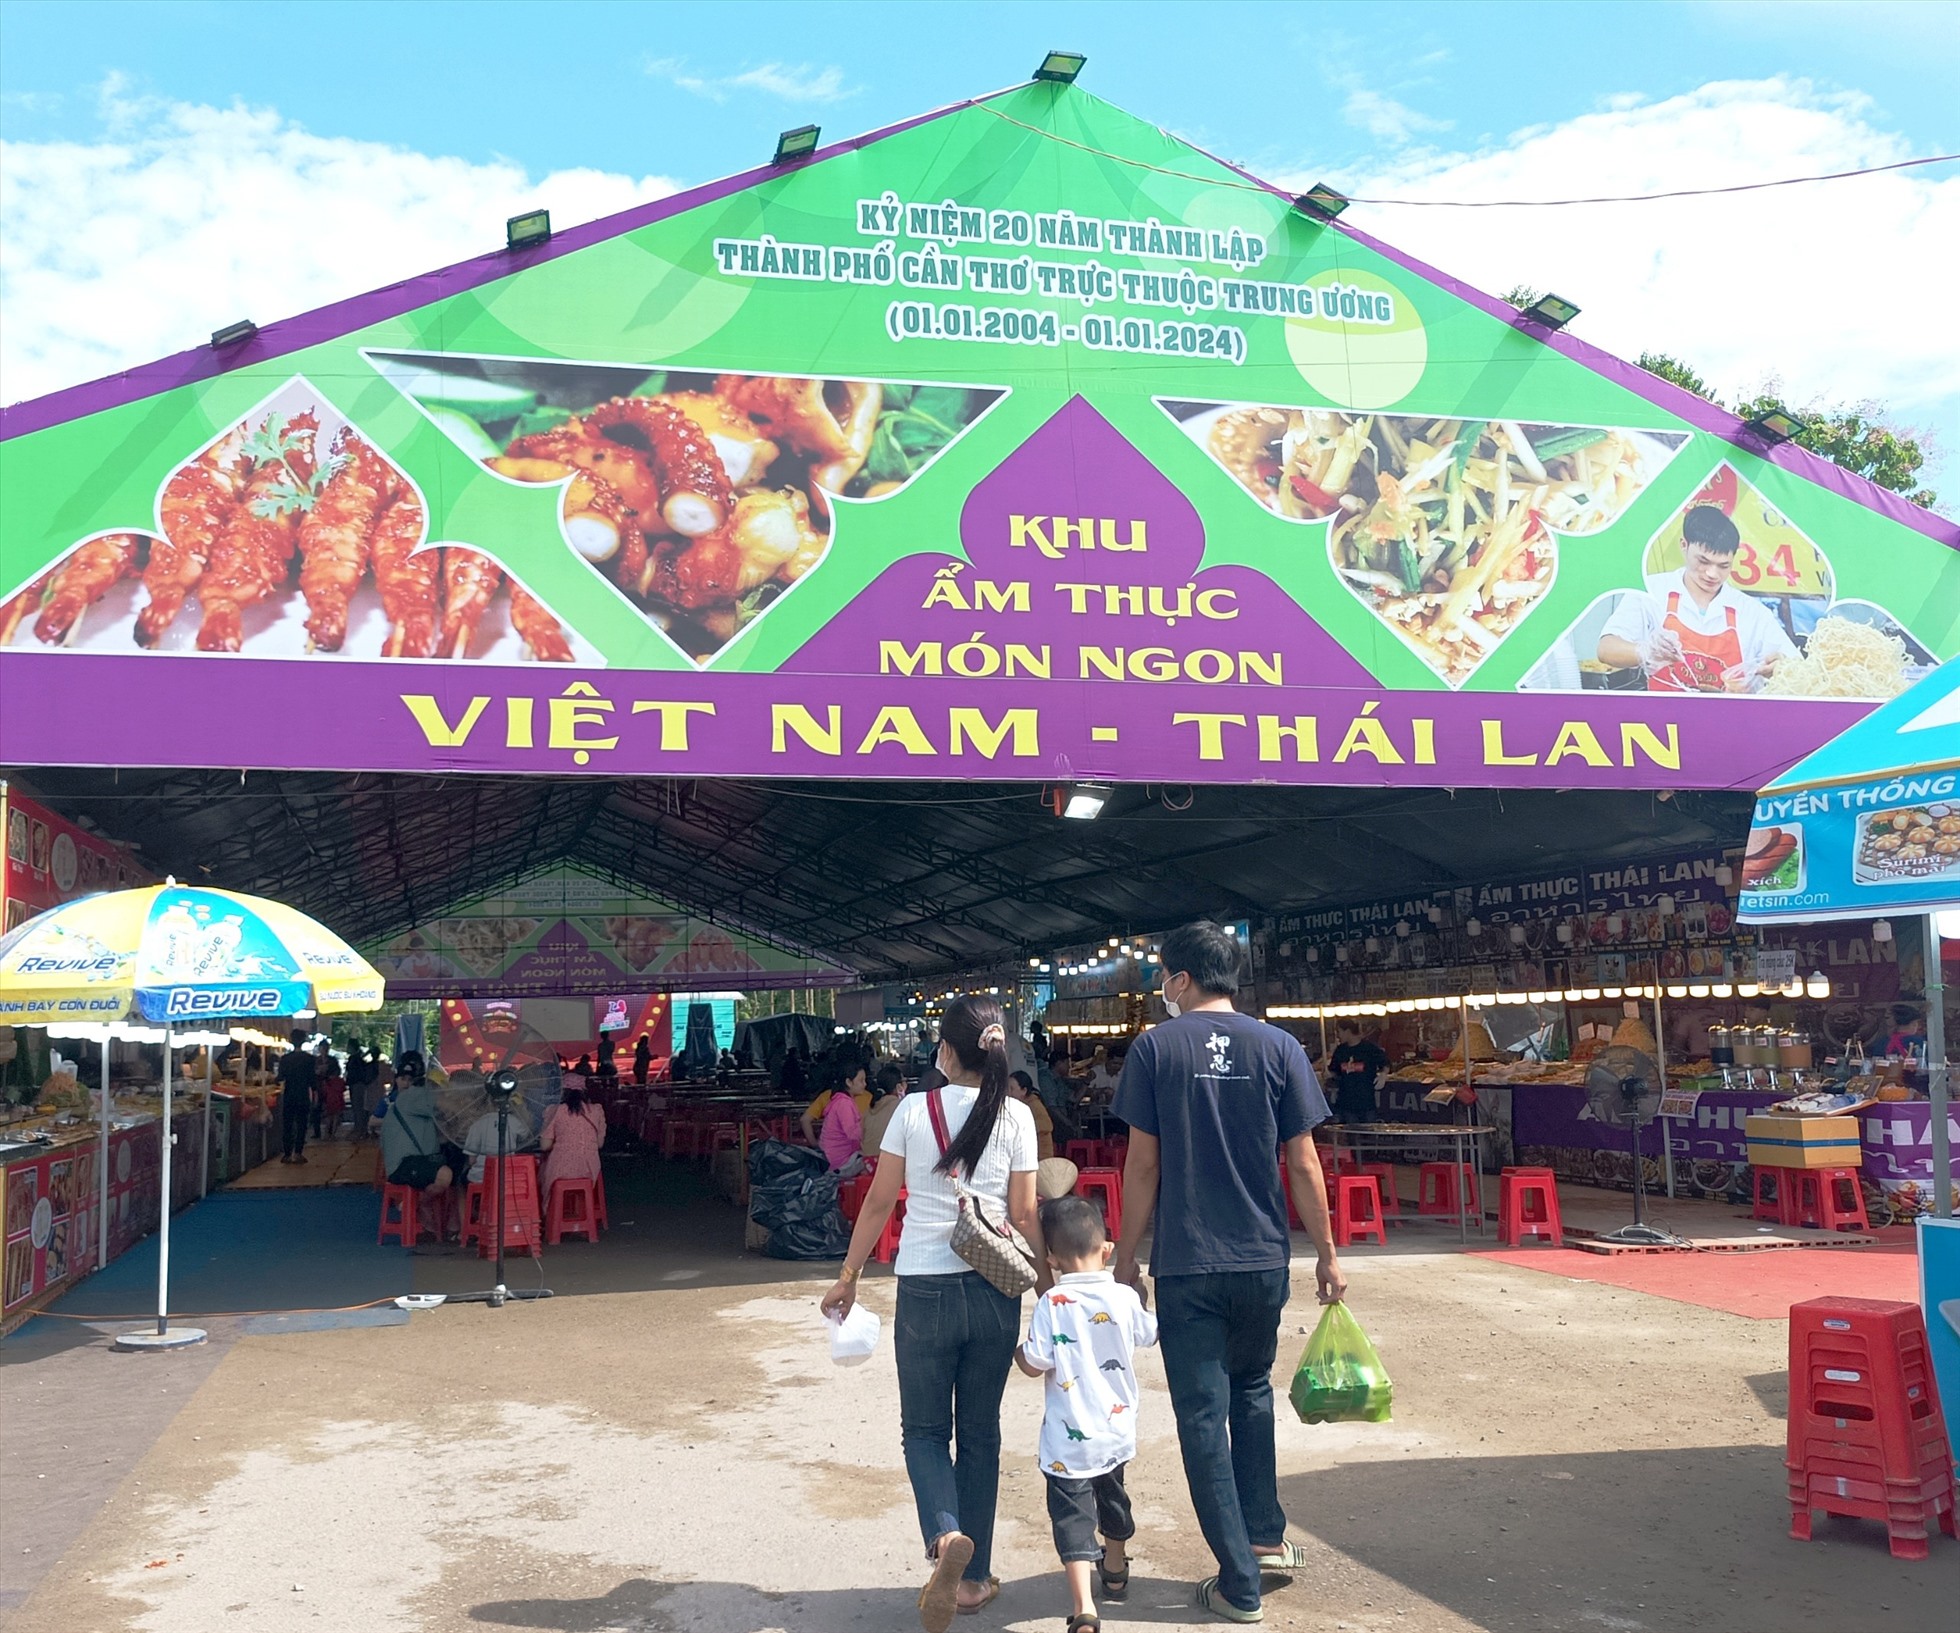 Khu ẩm thực món ngon Việt Nam - Thái Lan. Ảnh: Cẩm Tú